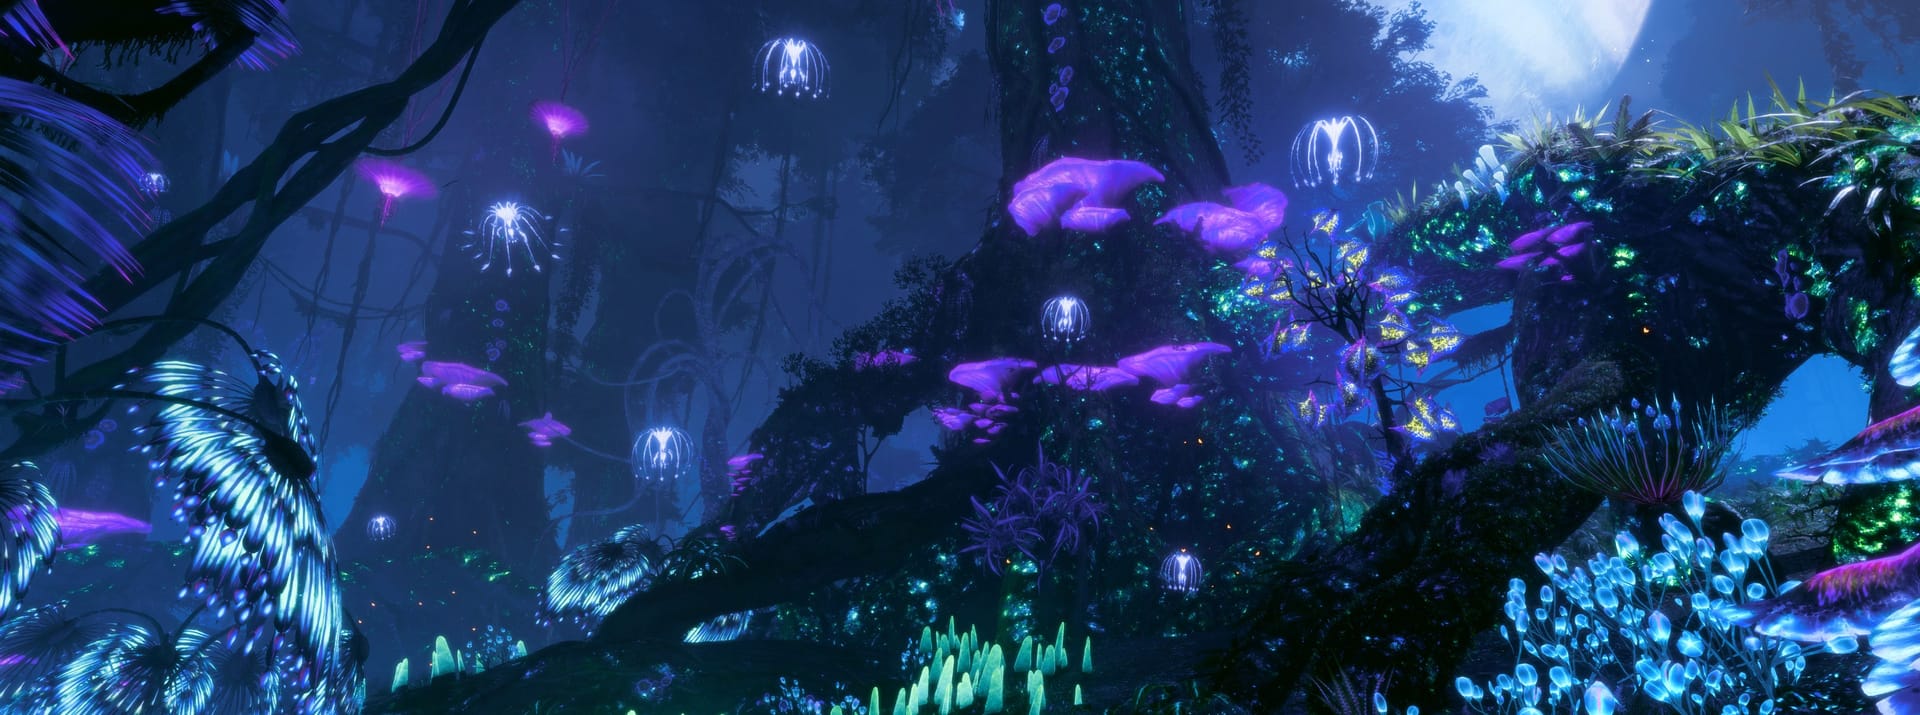 Pandora bei Nacht: So schön können die verschiedenen Biome sein.